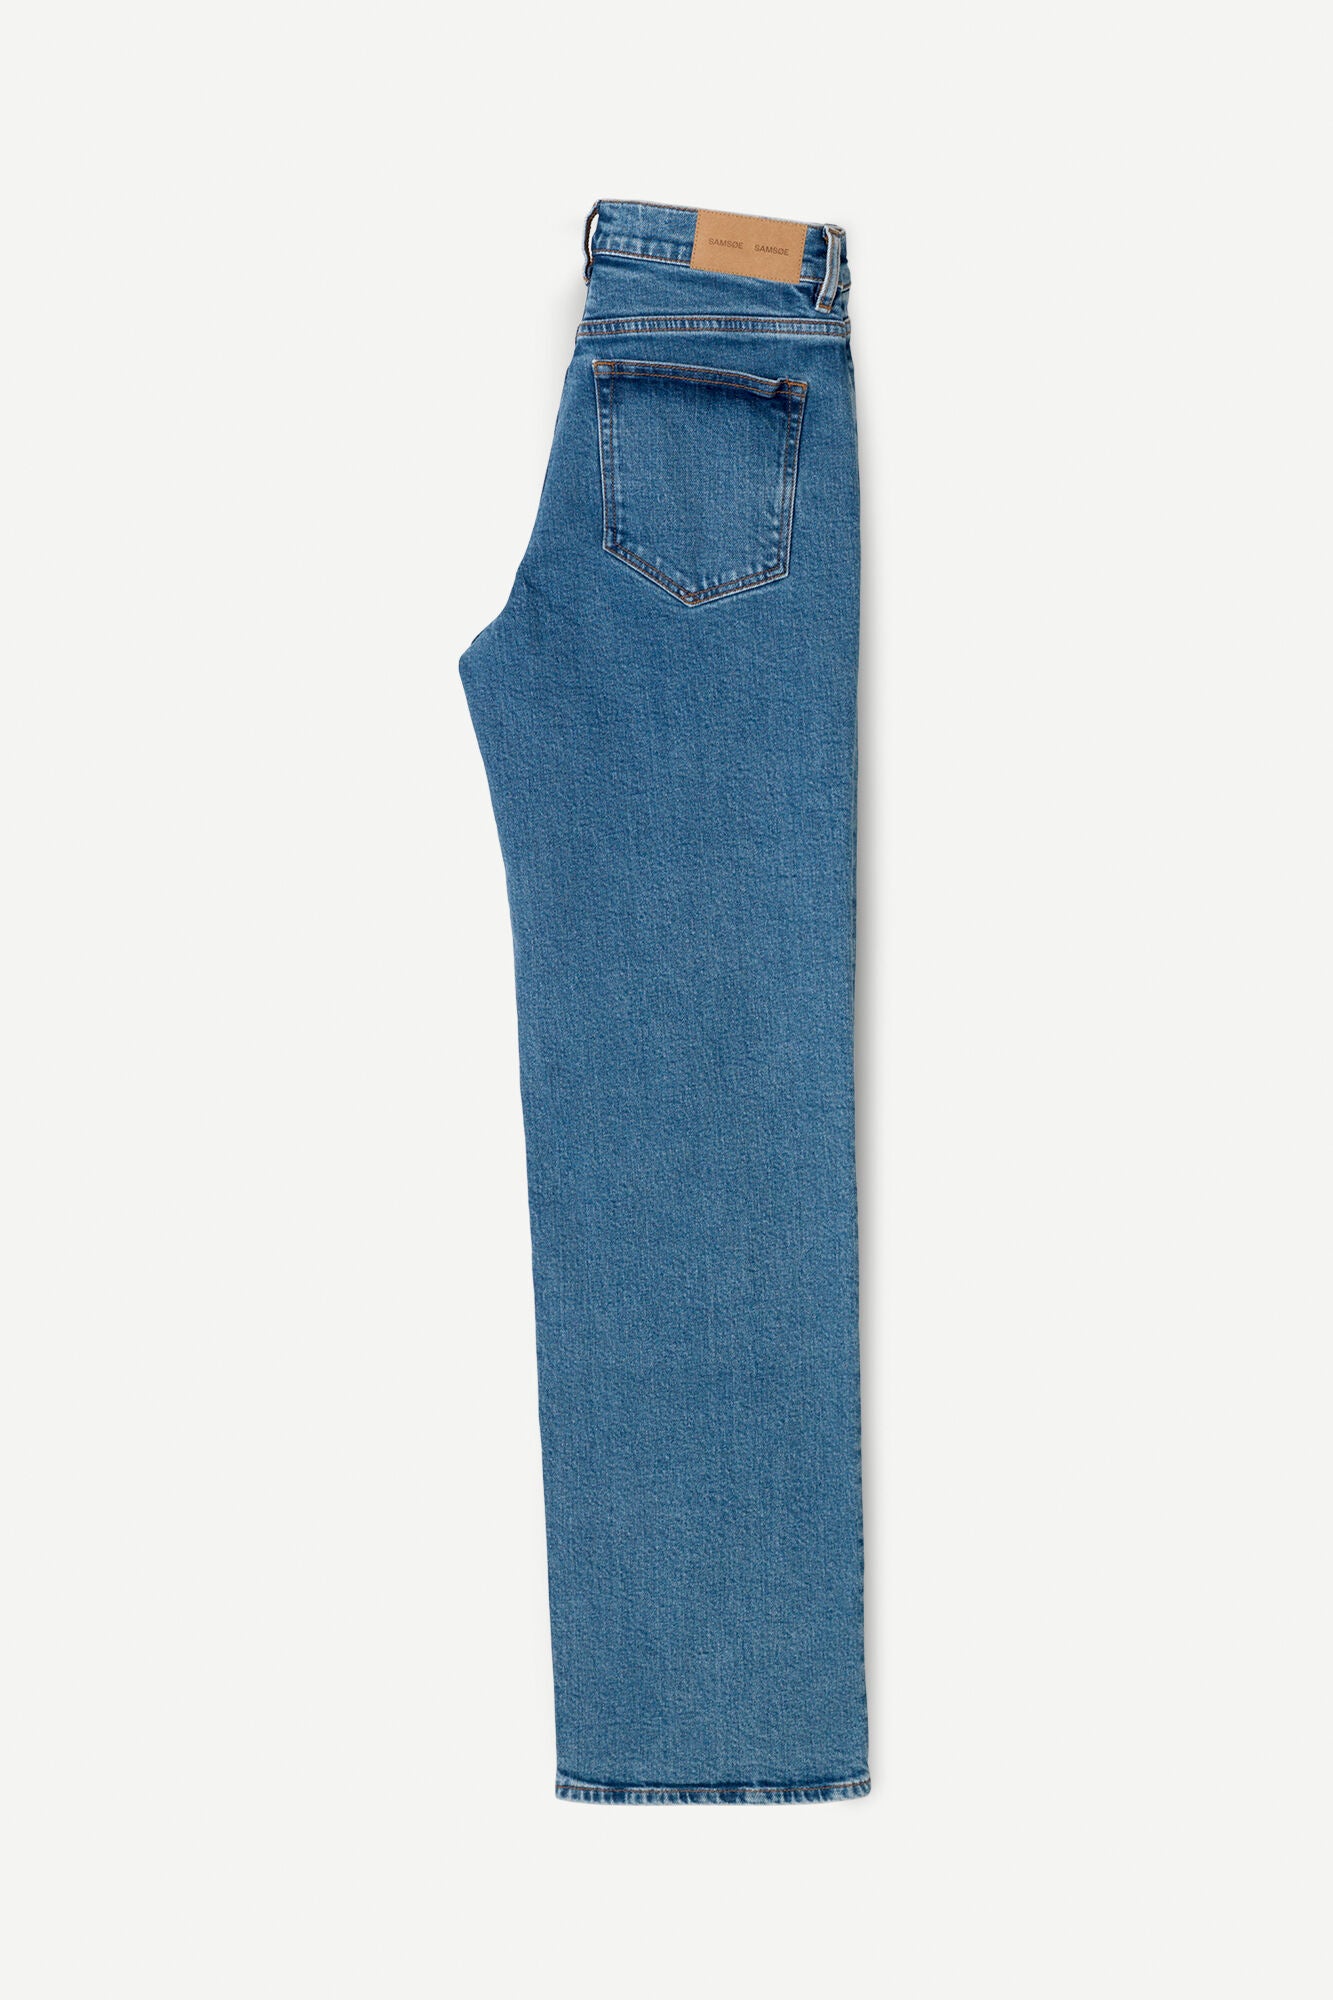 Full length straight leg denim in blue wash